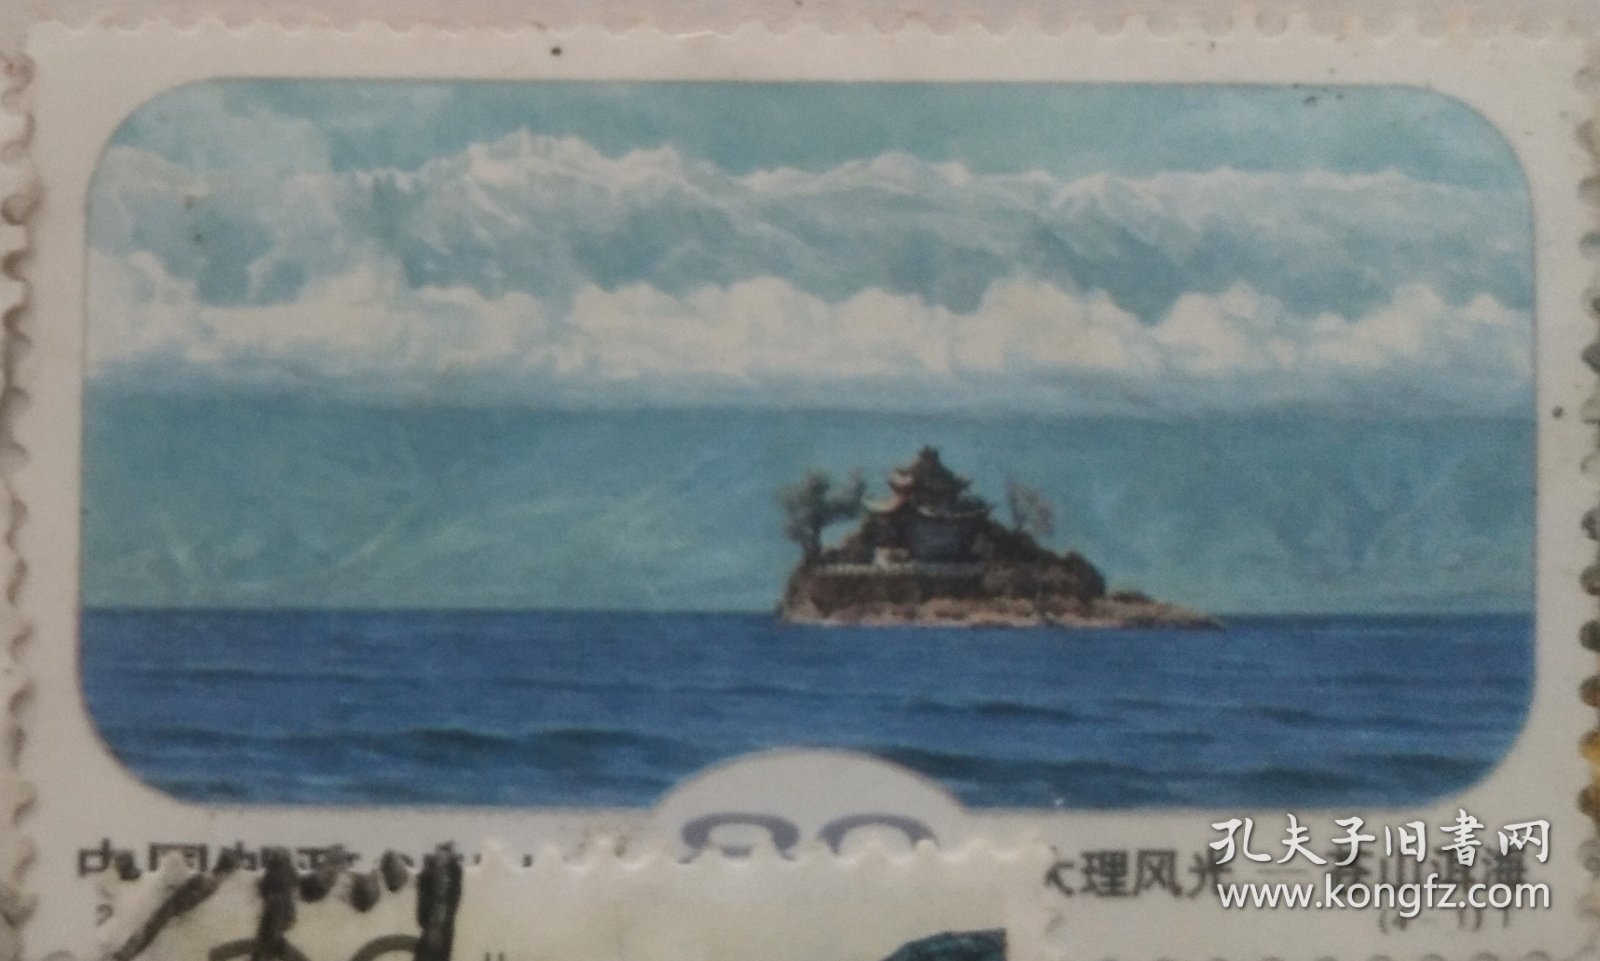 《大理风光》特种纪念邮票之“苍山洱海”、“崇圣寺三塔”。